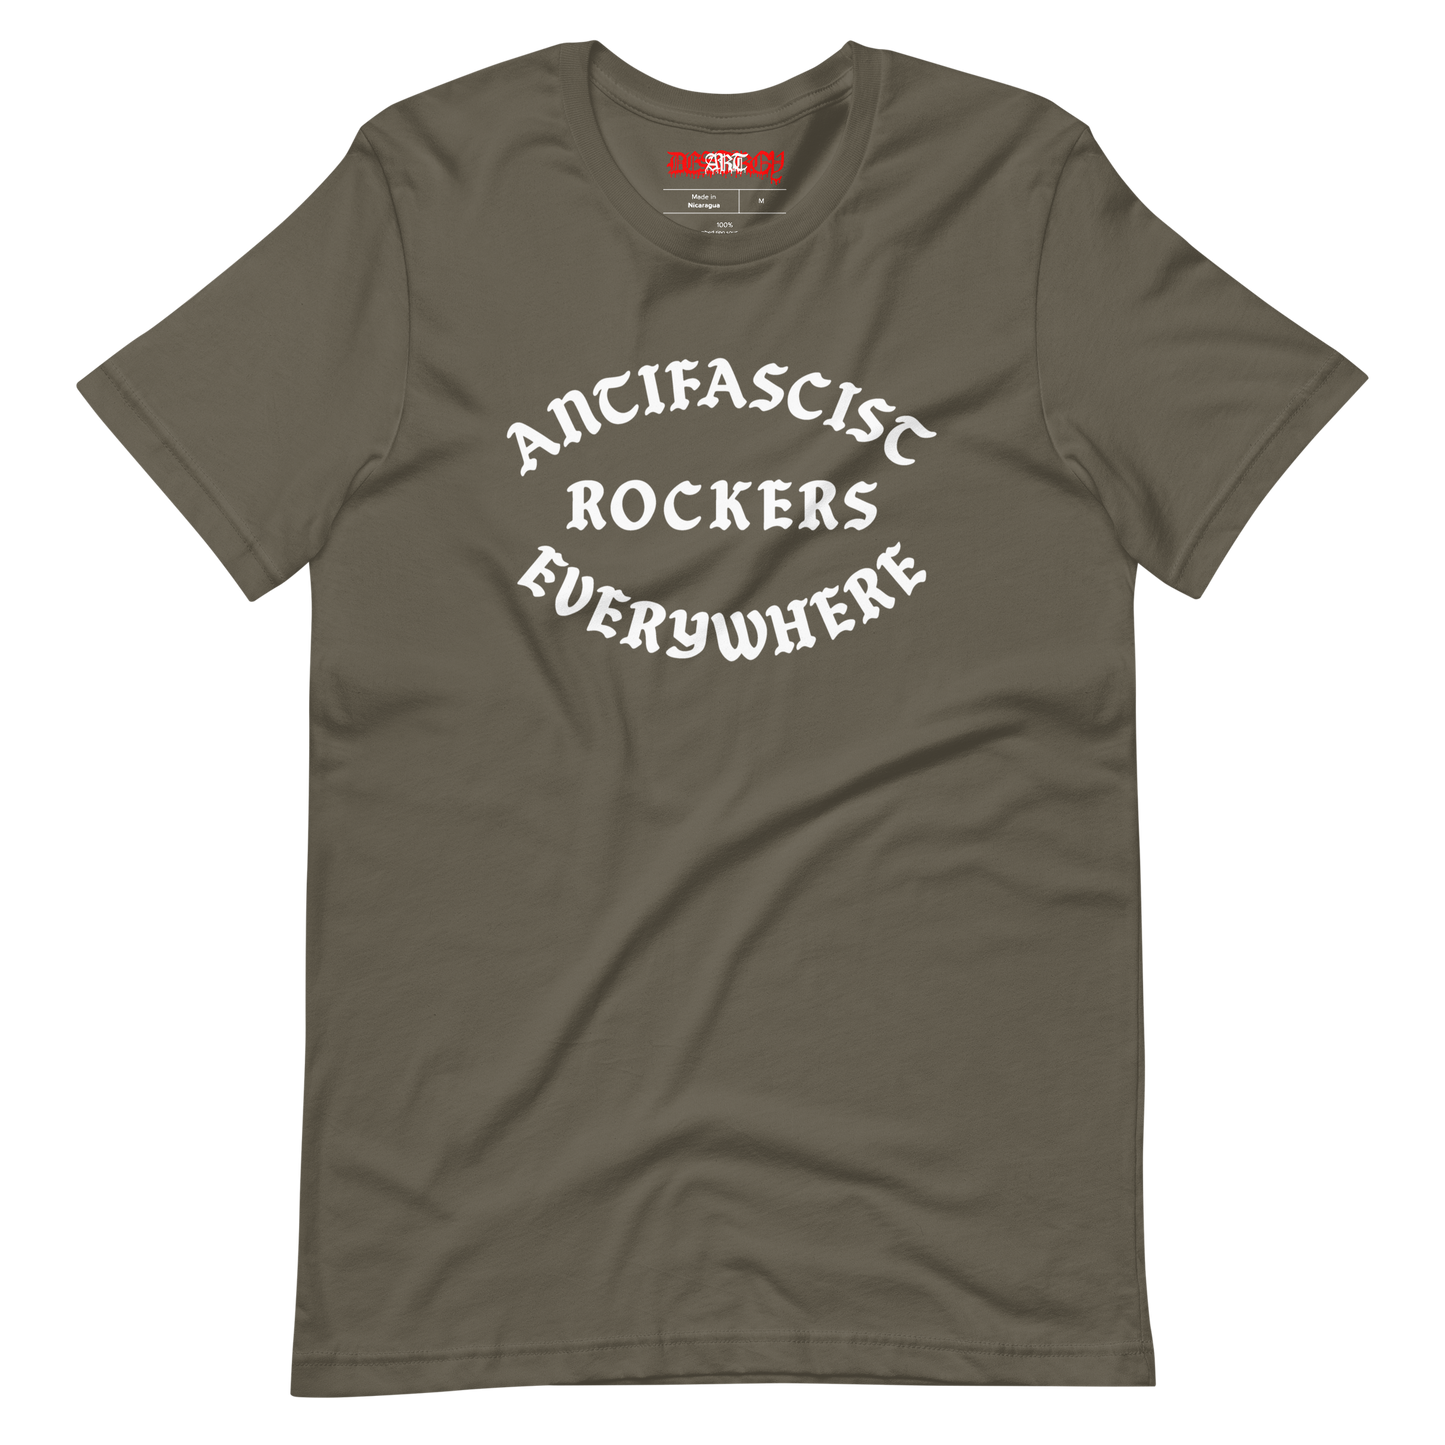 Stealworks "Antifascist Rockers Everywhere" T-shirt